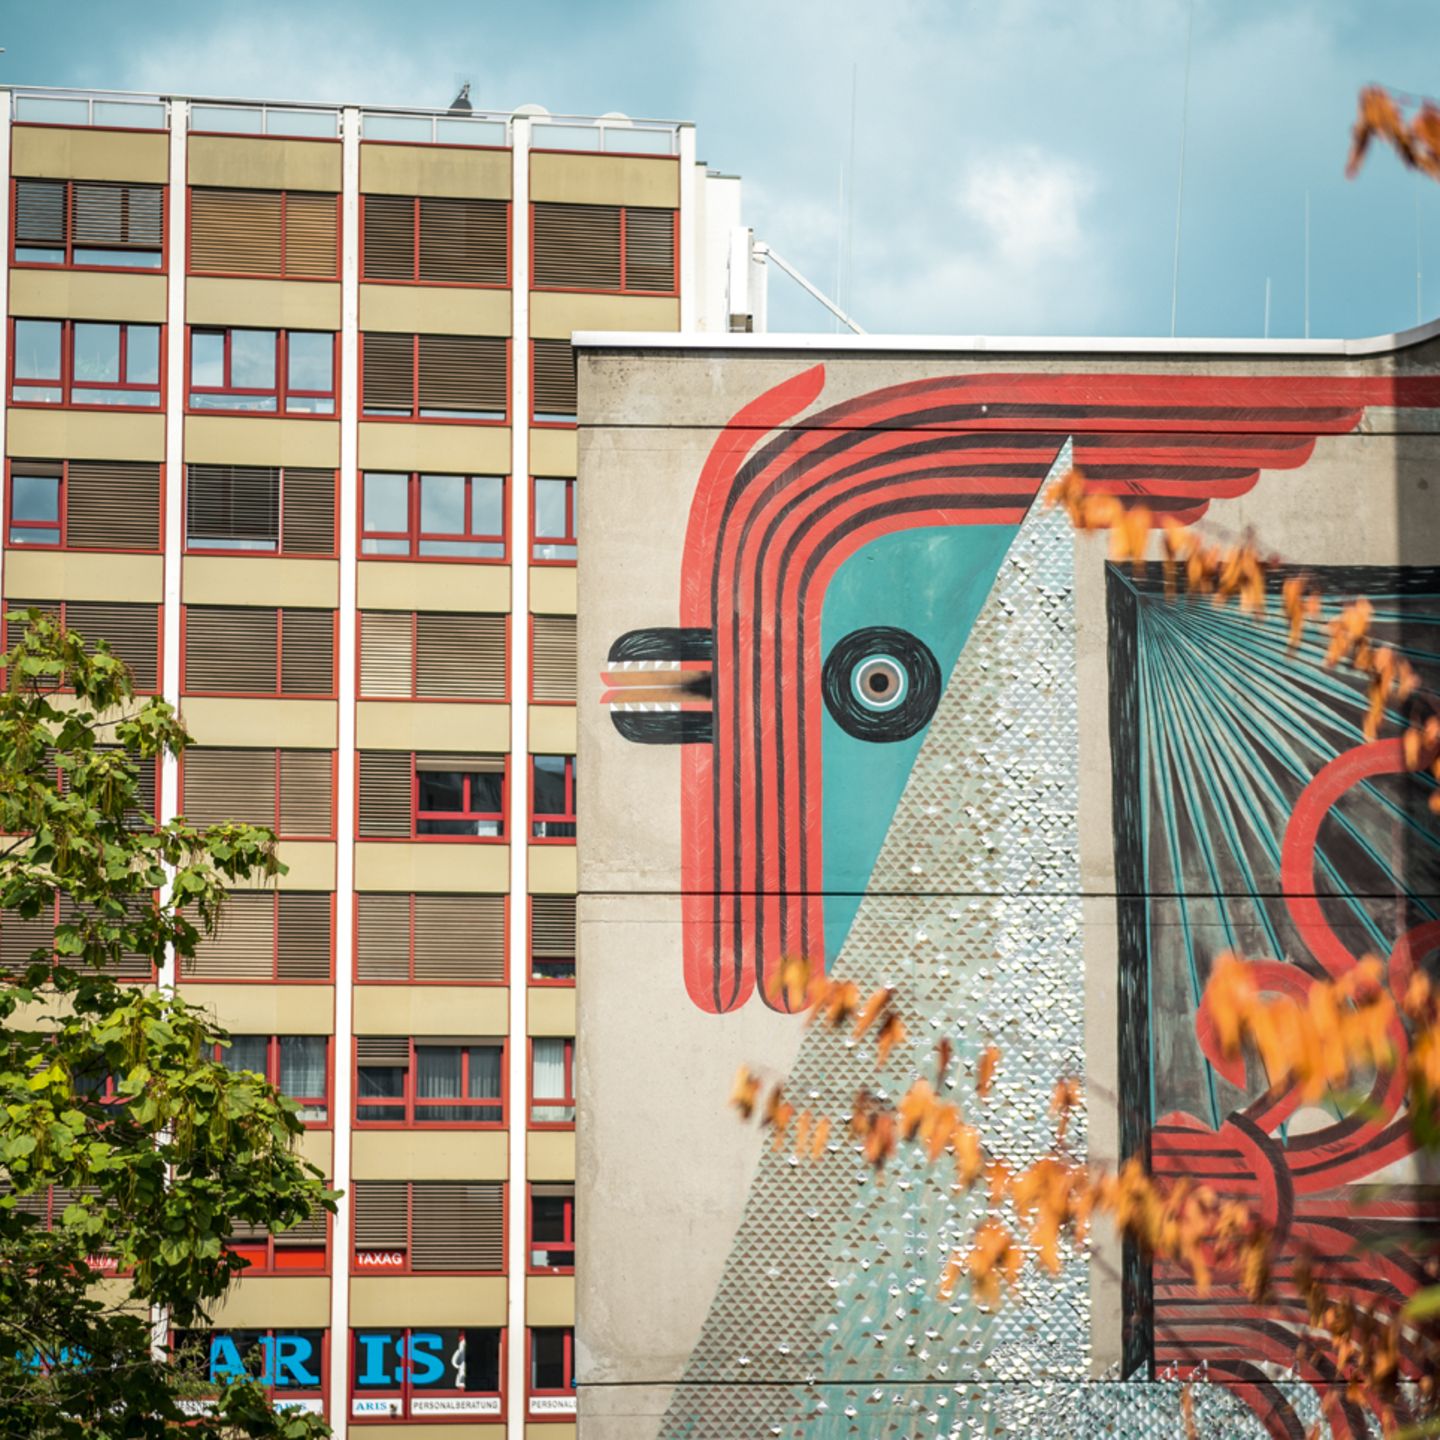 Wir wissen natürlich längst: Basel ist ein echter Kunst-Hotspot. Was oft vergessen wird: Auch ein Hotspot der Street Art. In den Gassen gibt es etliche Werke von nationalen und internationalen Graffiti- und Street Art-Künstlern zu entdecken.